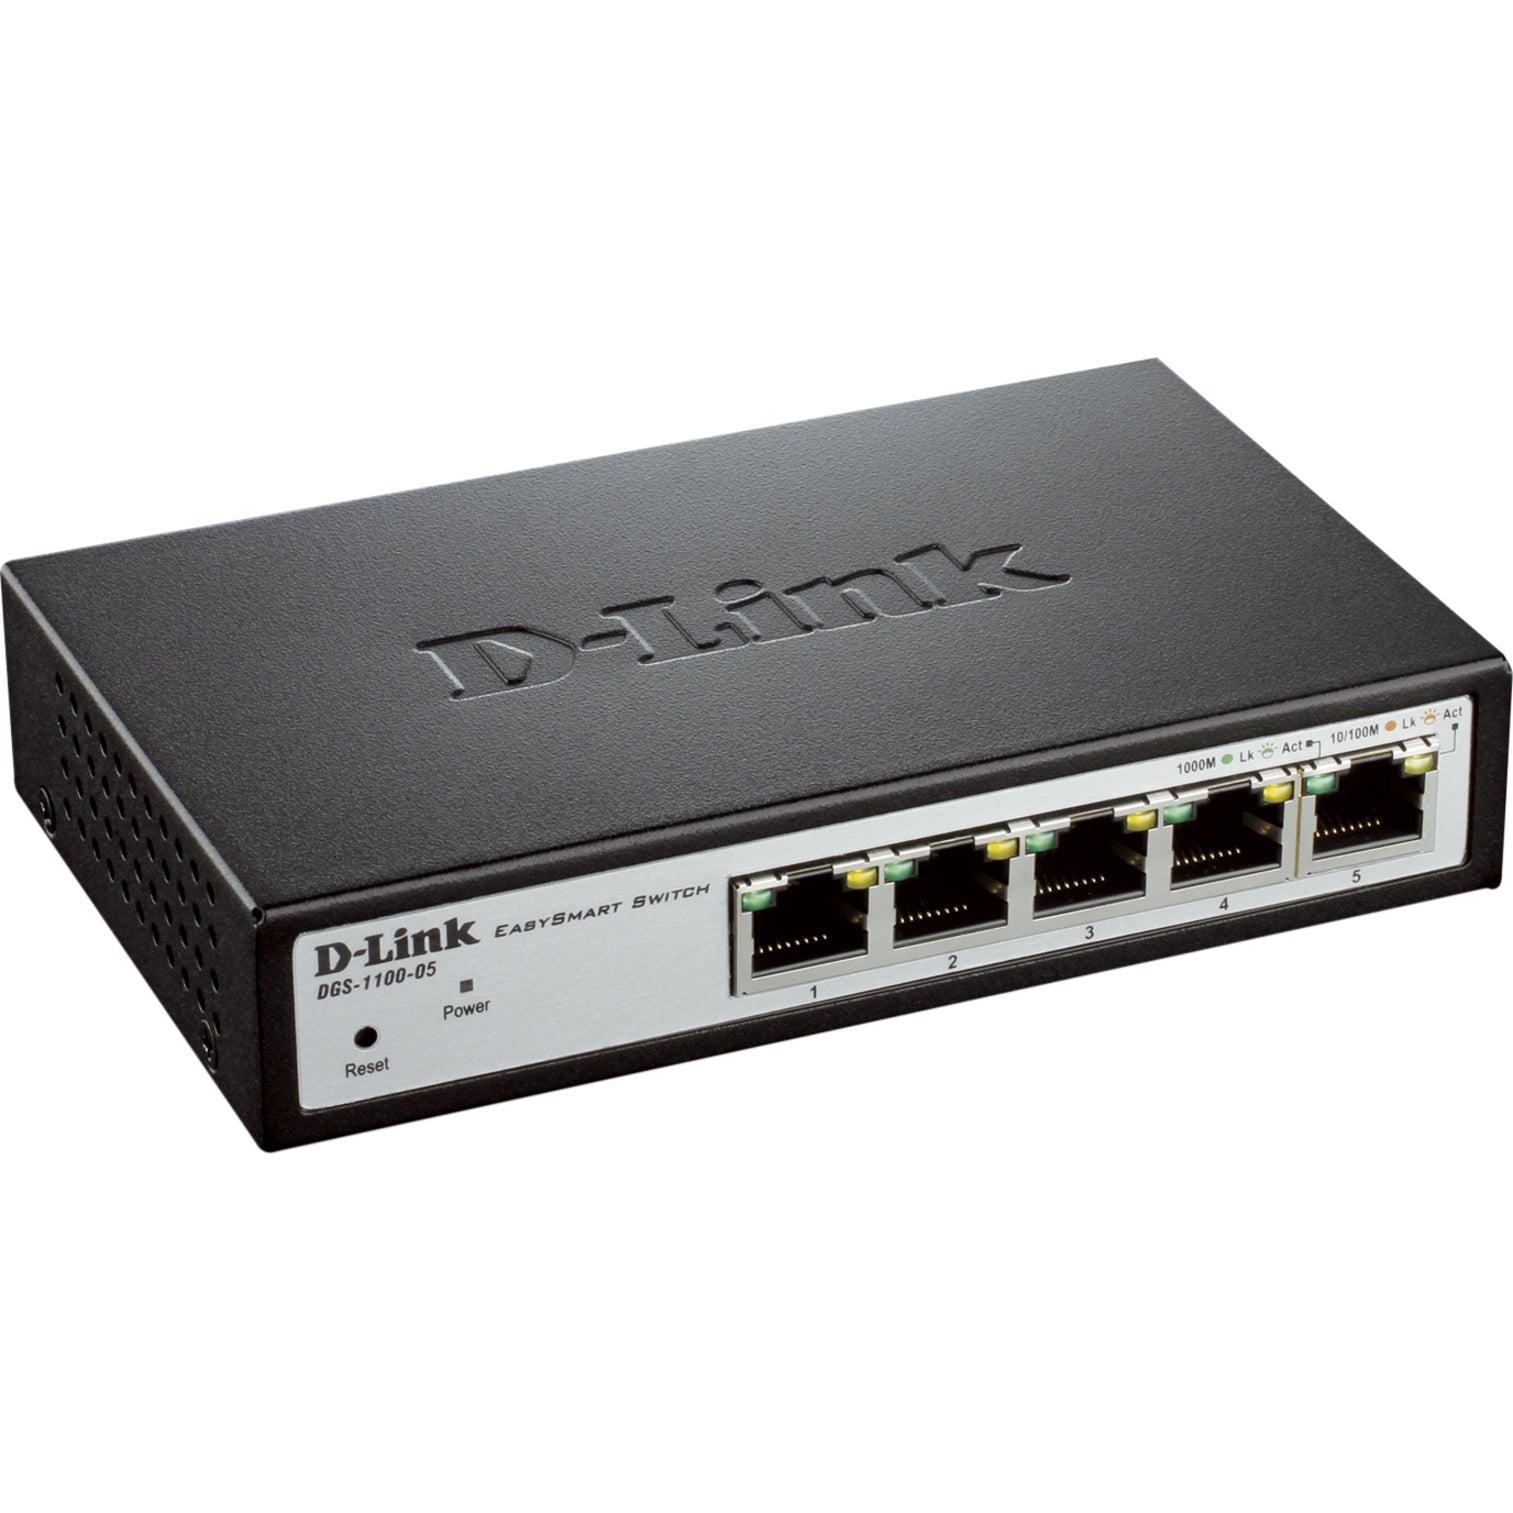 D-Link 5 Port Gigabit Easy Smart Switch (DGS-1100-05)